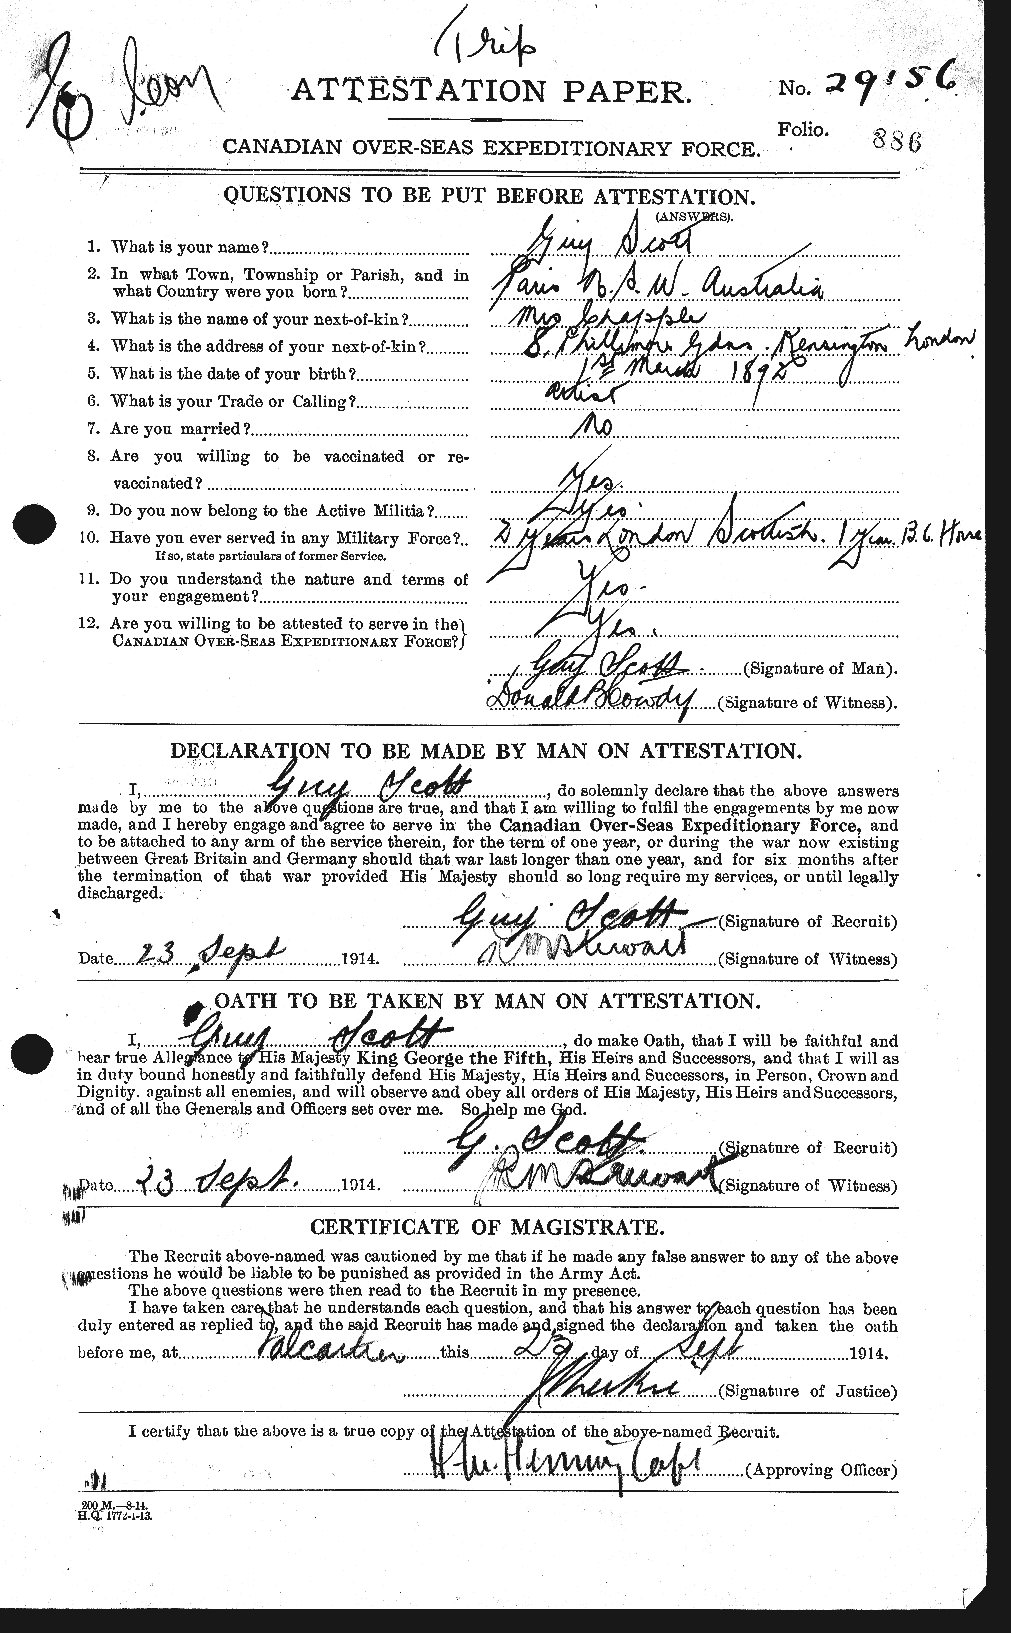 Dossiers du Personnel de la Première Guerre mondiale - CEC 086509a